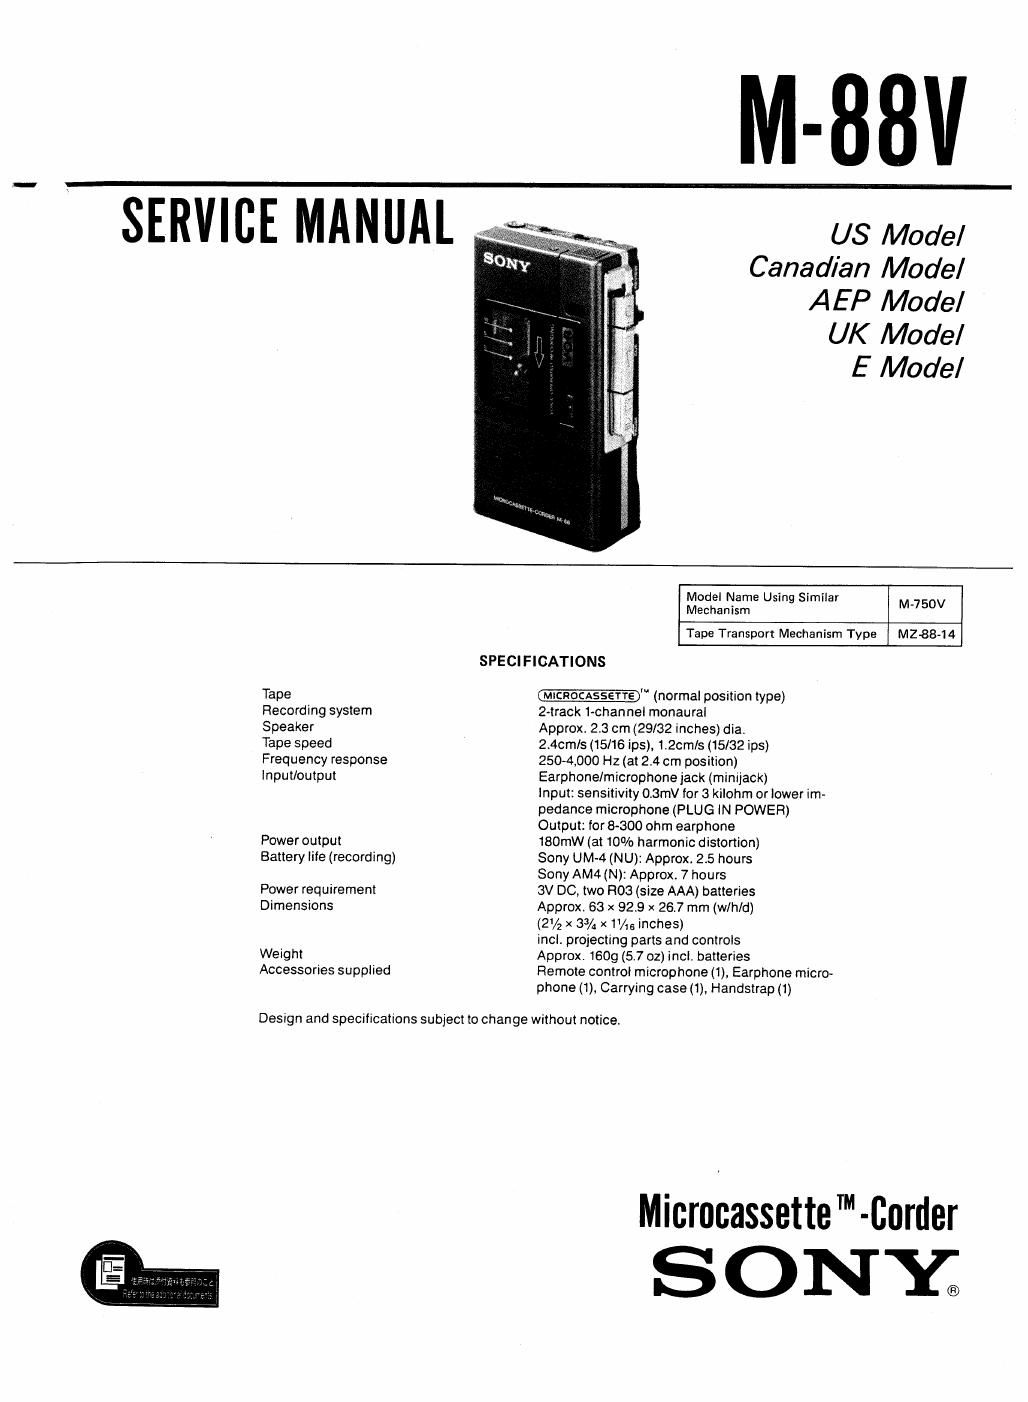 sony m 88 v service manual